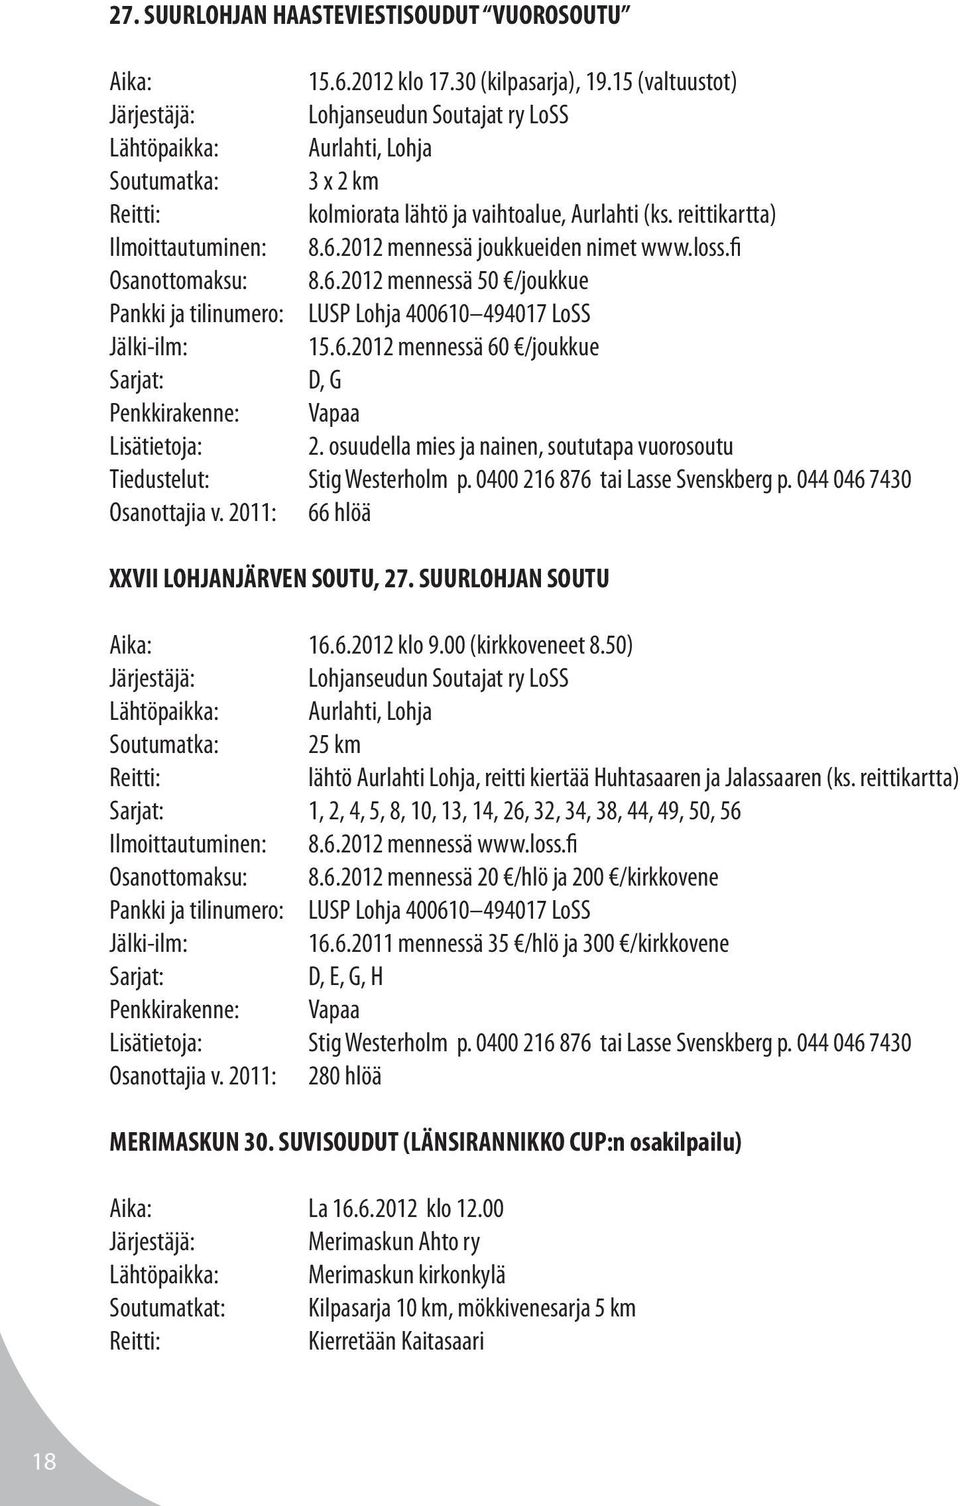 2012 mennessä joukkueiden nimet www.loss.fi Osanottomaksu: 8.6.2012 mennessä 50 /joukkue Pankki ja tilinumero: LUSP Lohja 400610 494017 LoSS Jälki-ilm: 15.6.2012 mennessä 60 /joukkue Sarjat: D, G Penkkirakenne: Vapaa 2.